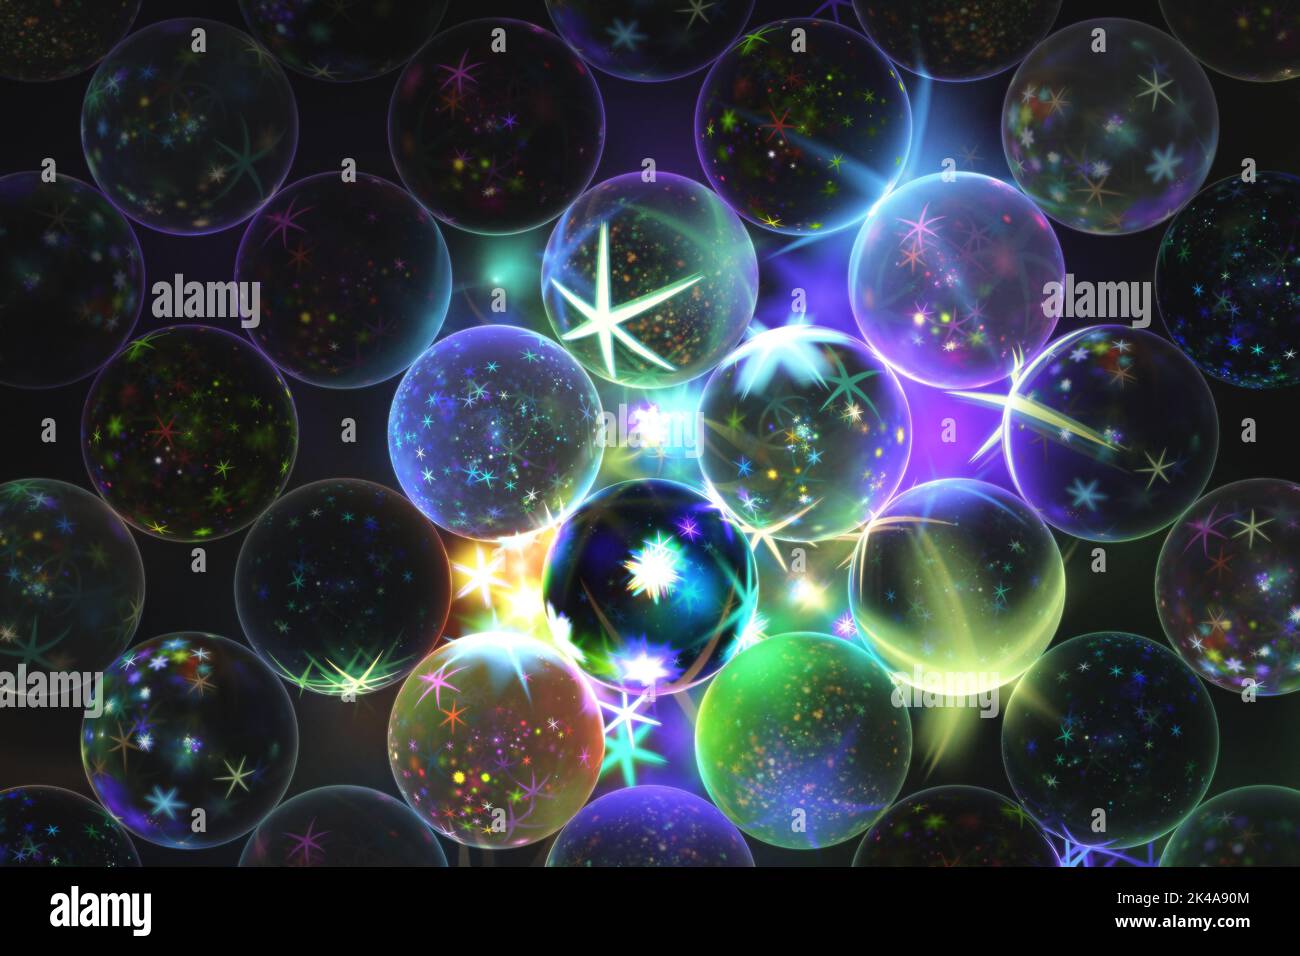 Fondo fractal con esferas decoradas con estrellas en la oscuridad Foto de stock